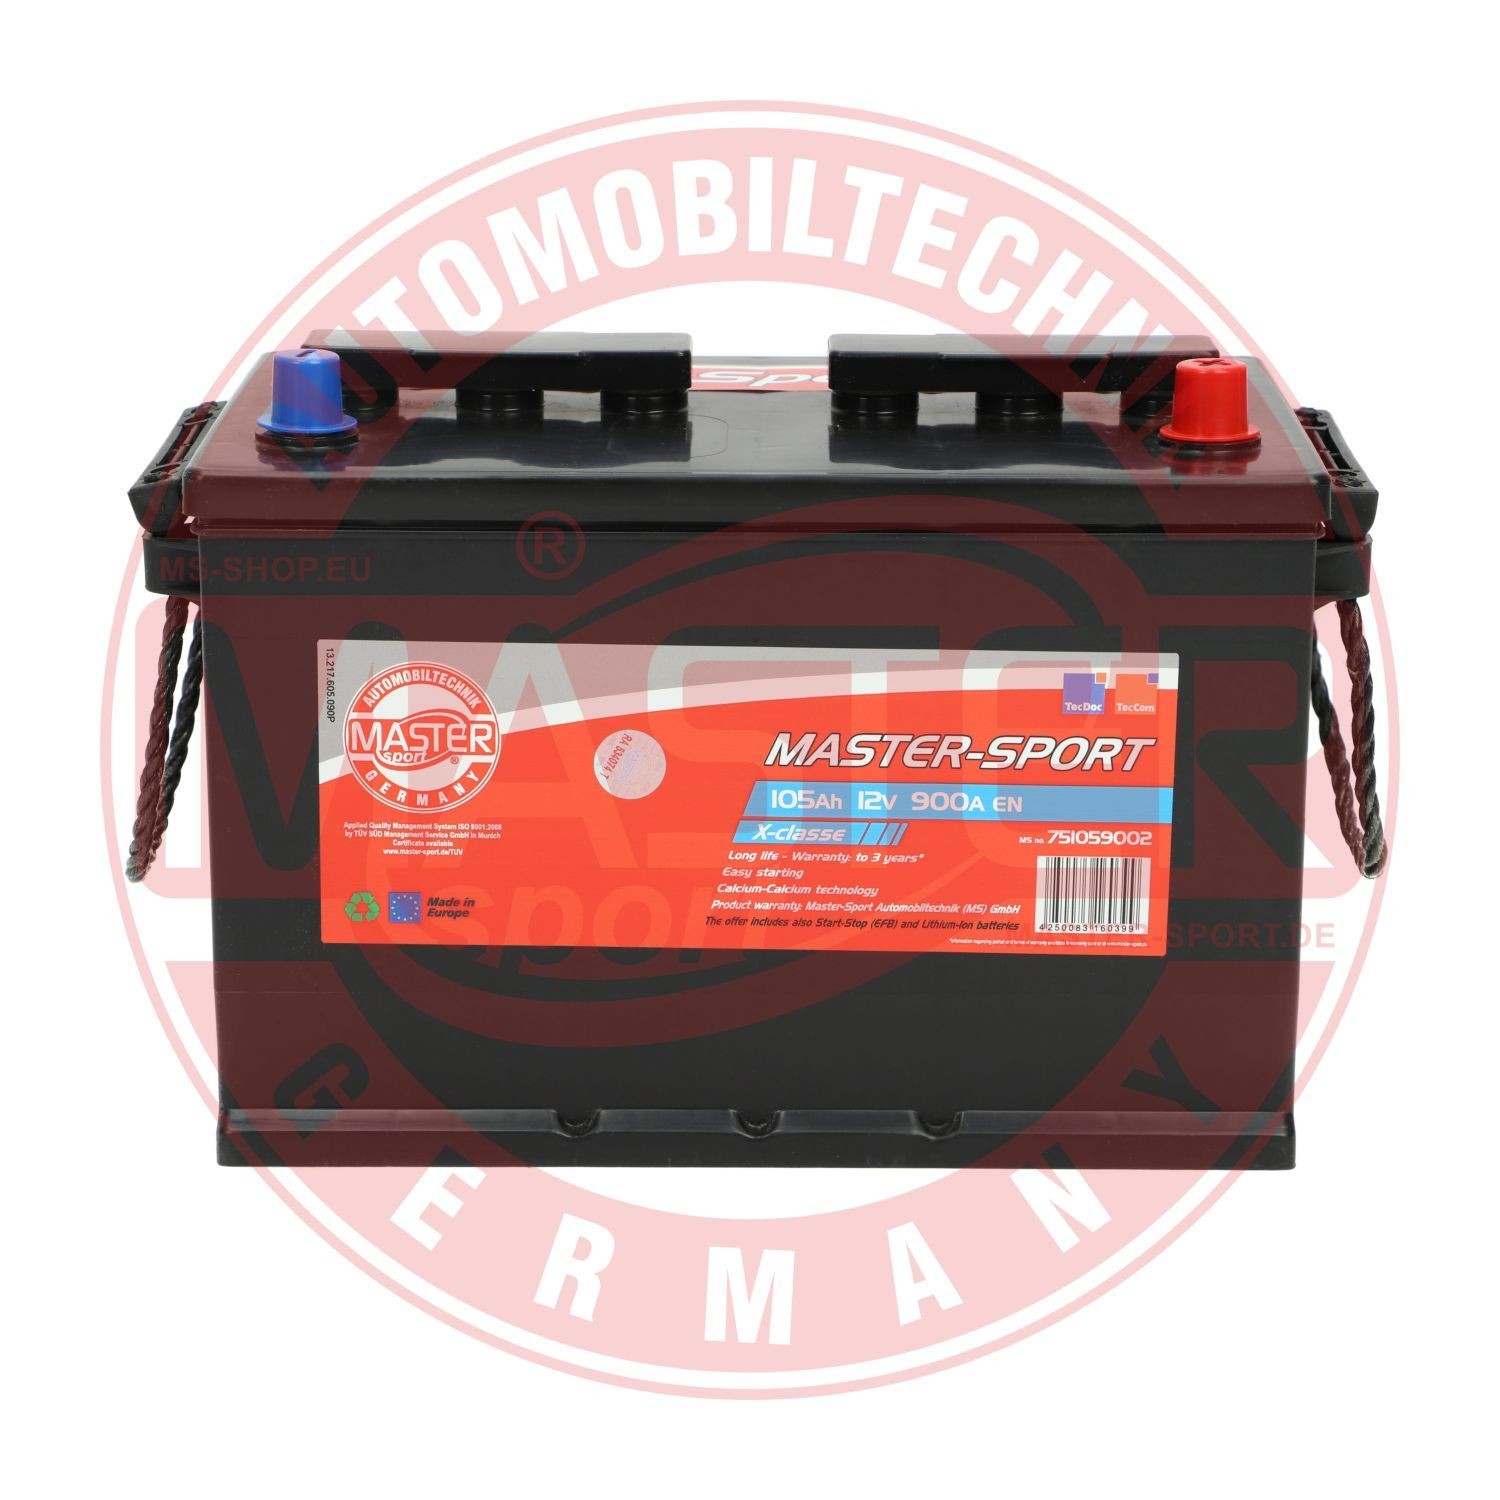 751059002 MASTER-SPORT Batterie für MITSUBISHI online bestellen